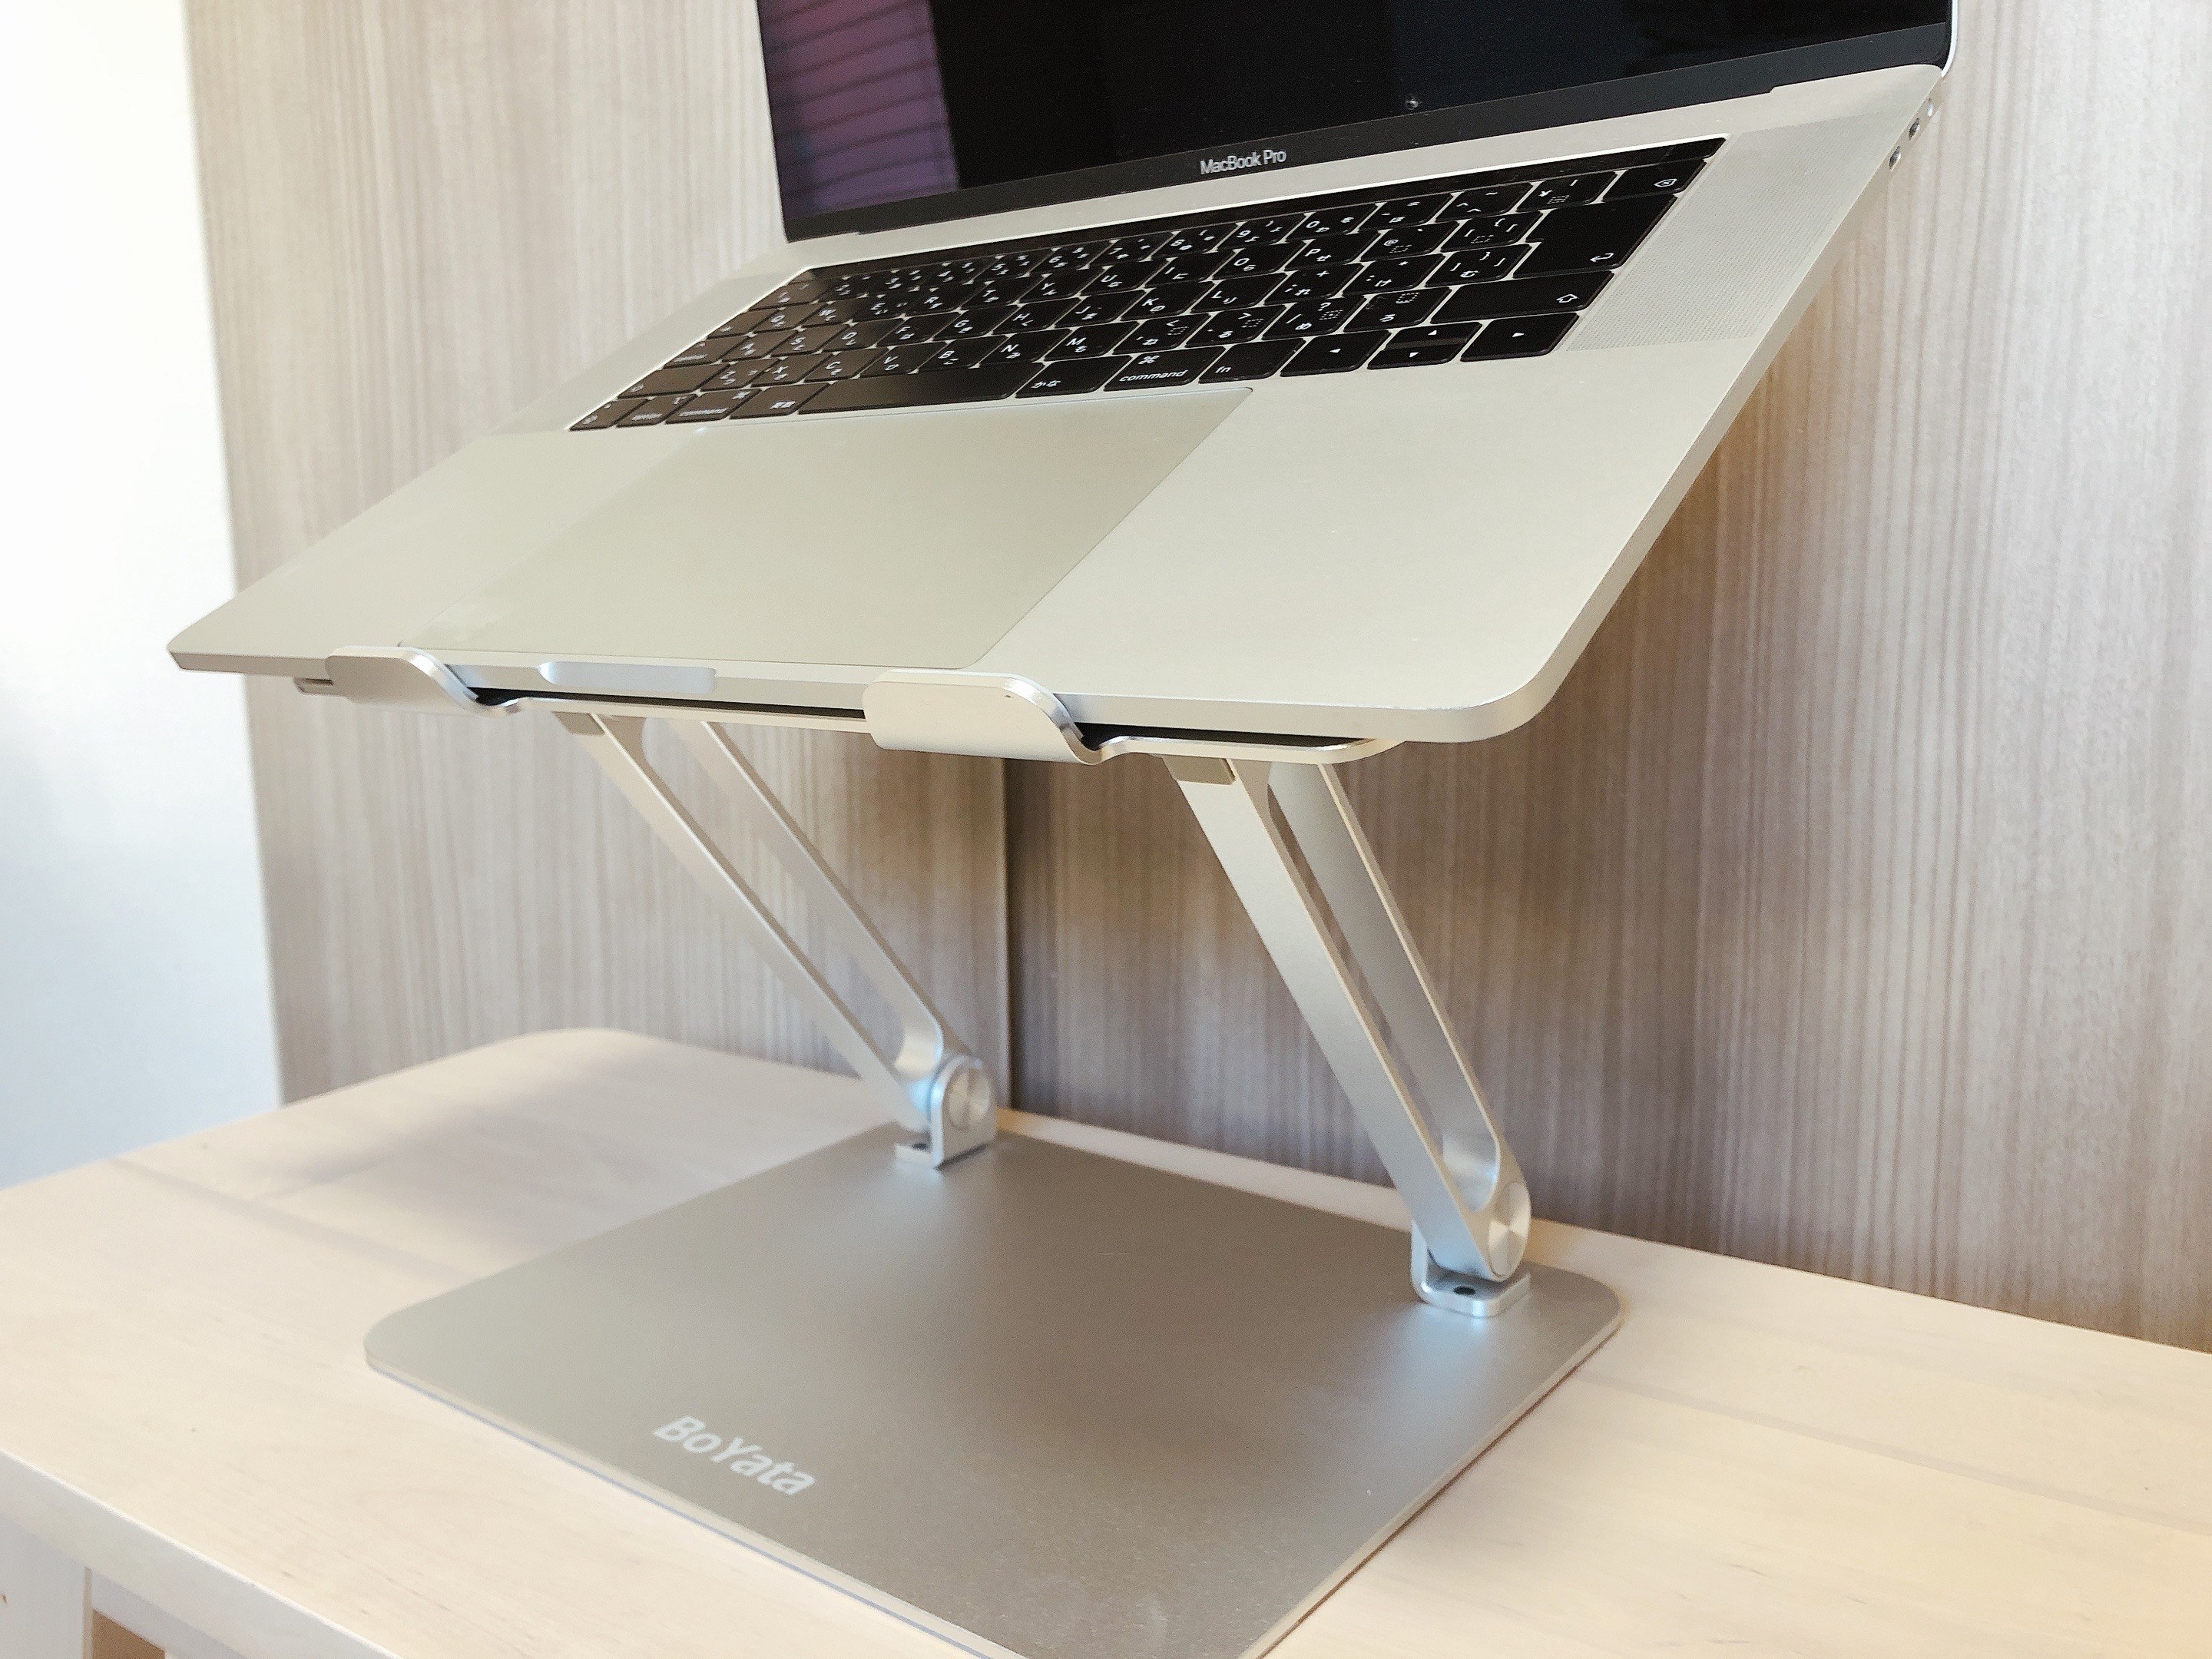 パソコンスタンド(MacBook)